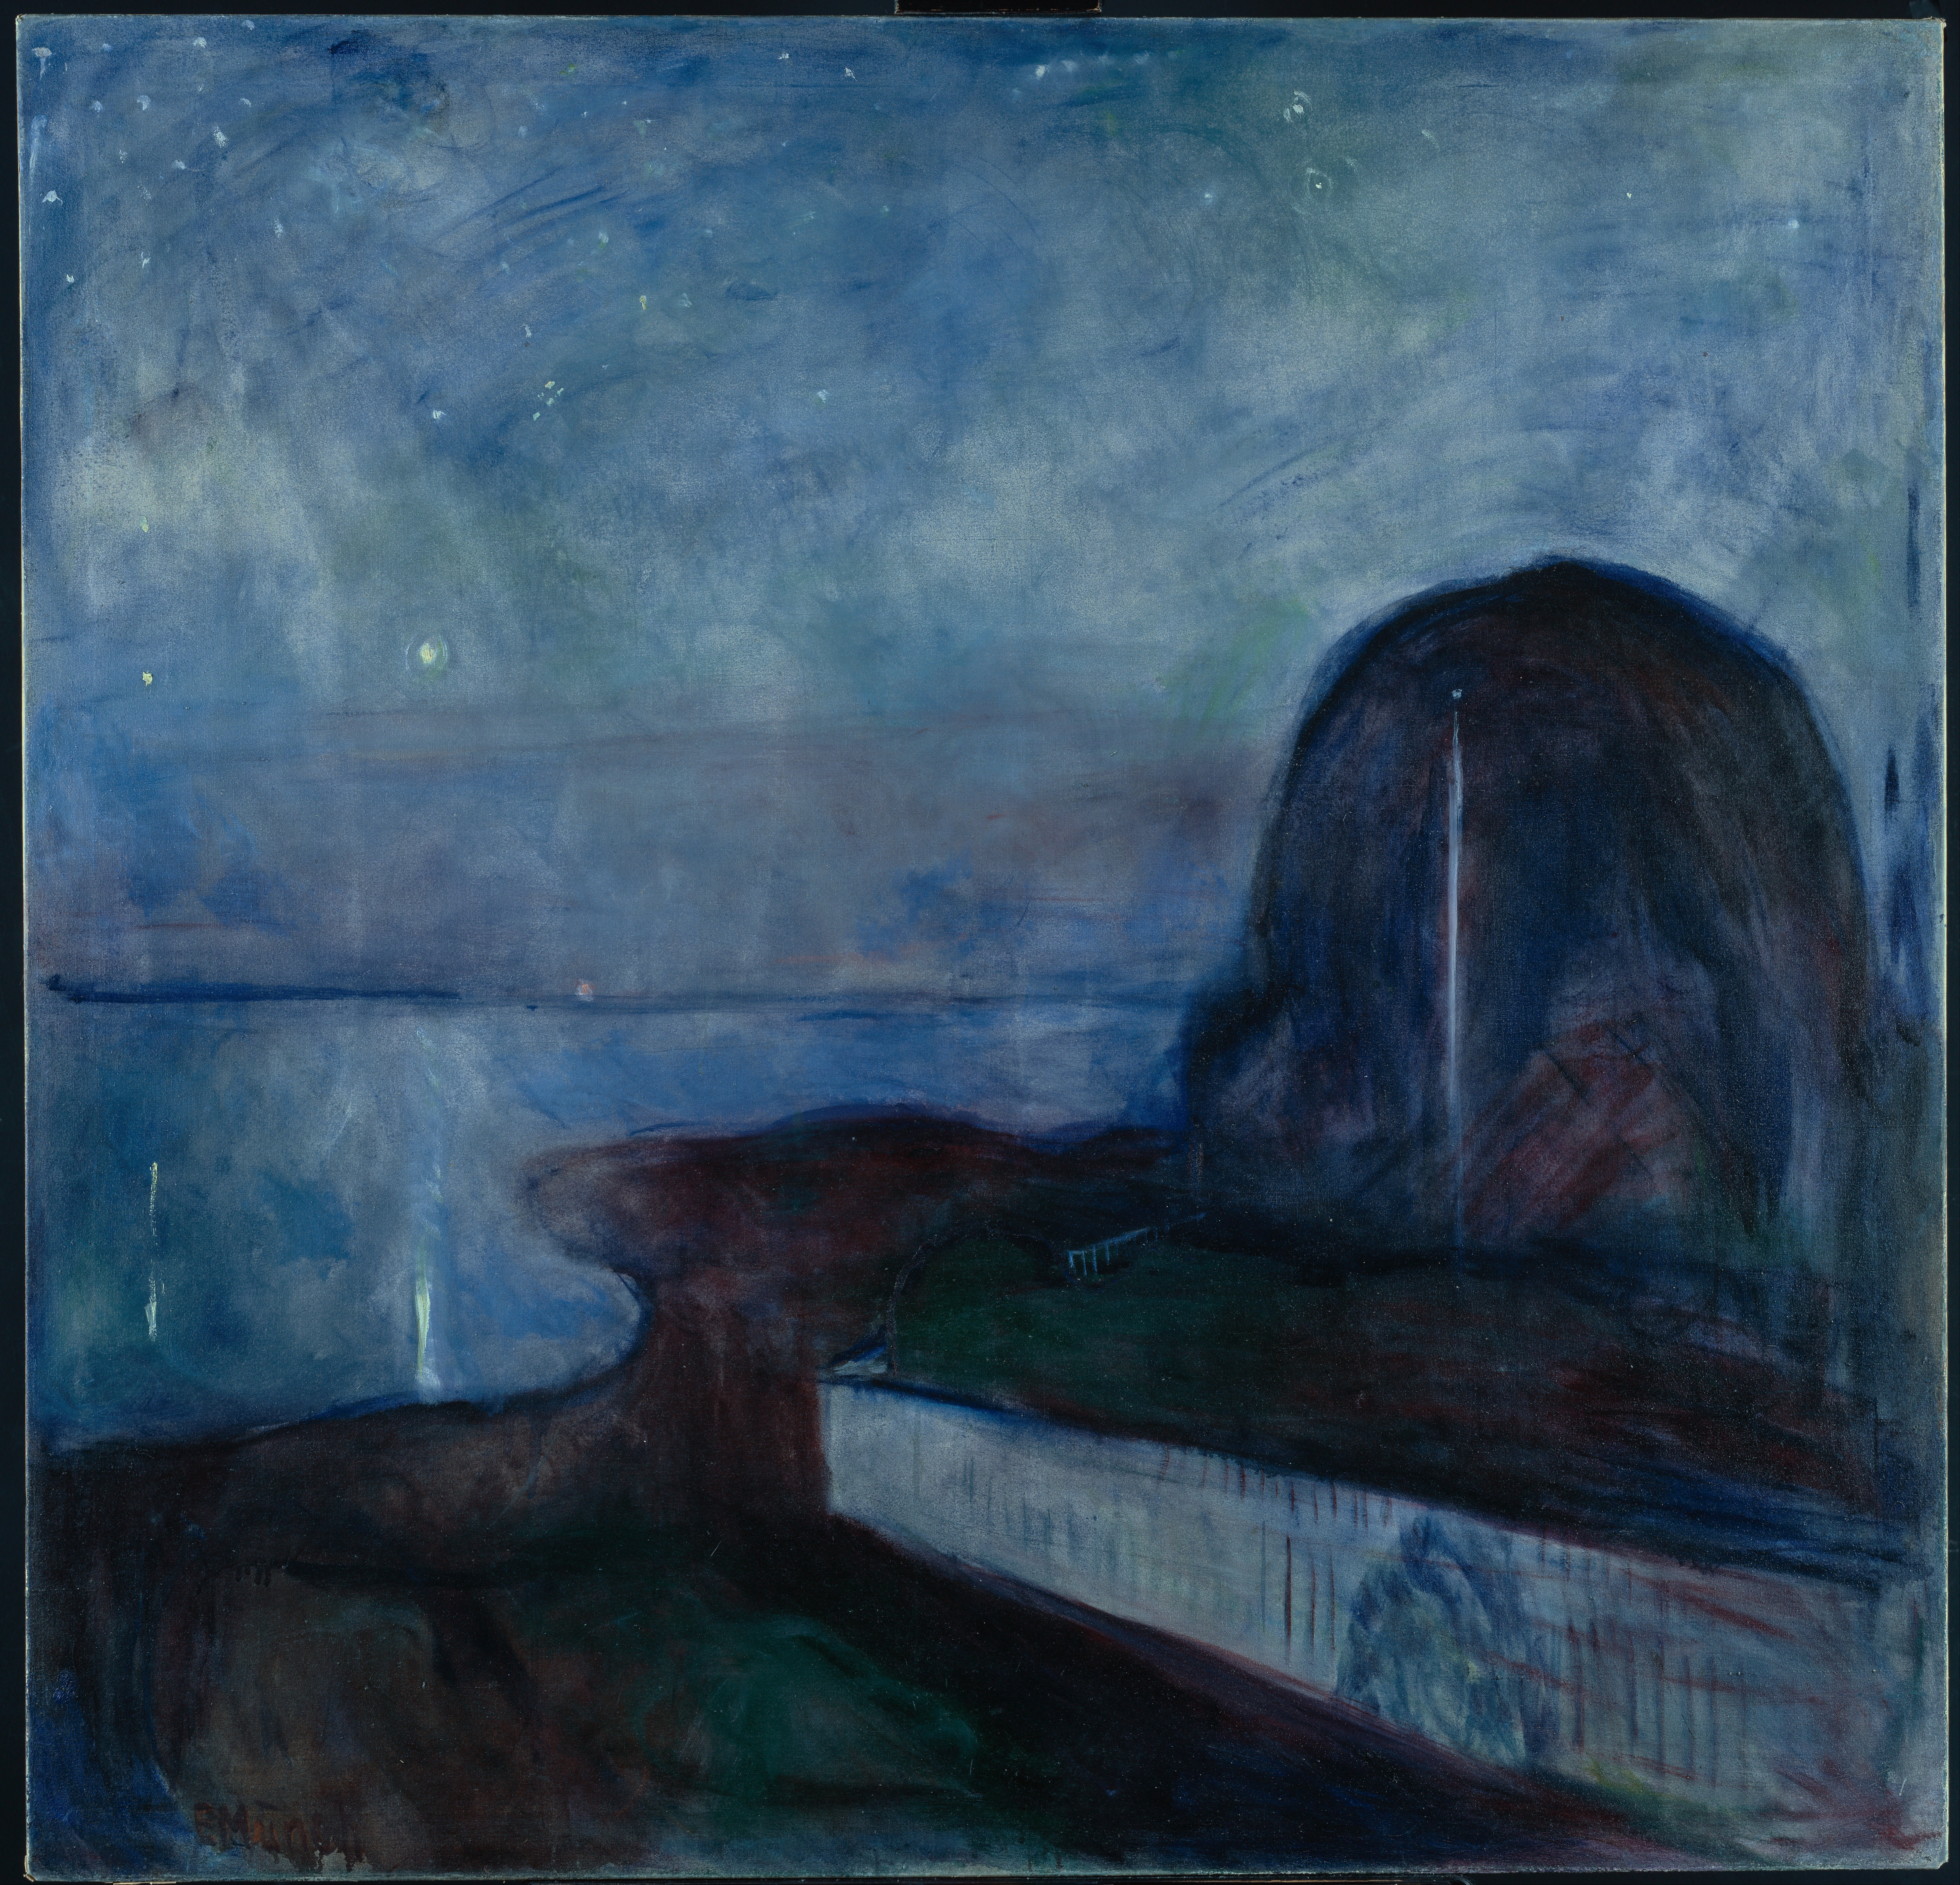 Gwieździsta noc by Edvard Munch - 1893 - 130 x 140 cm 